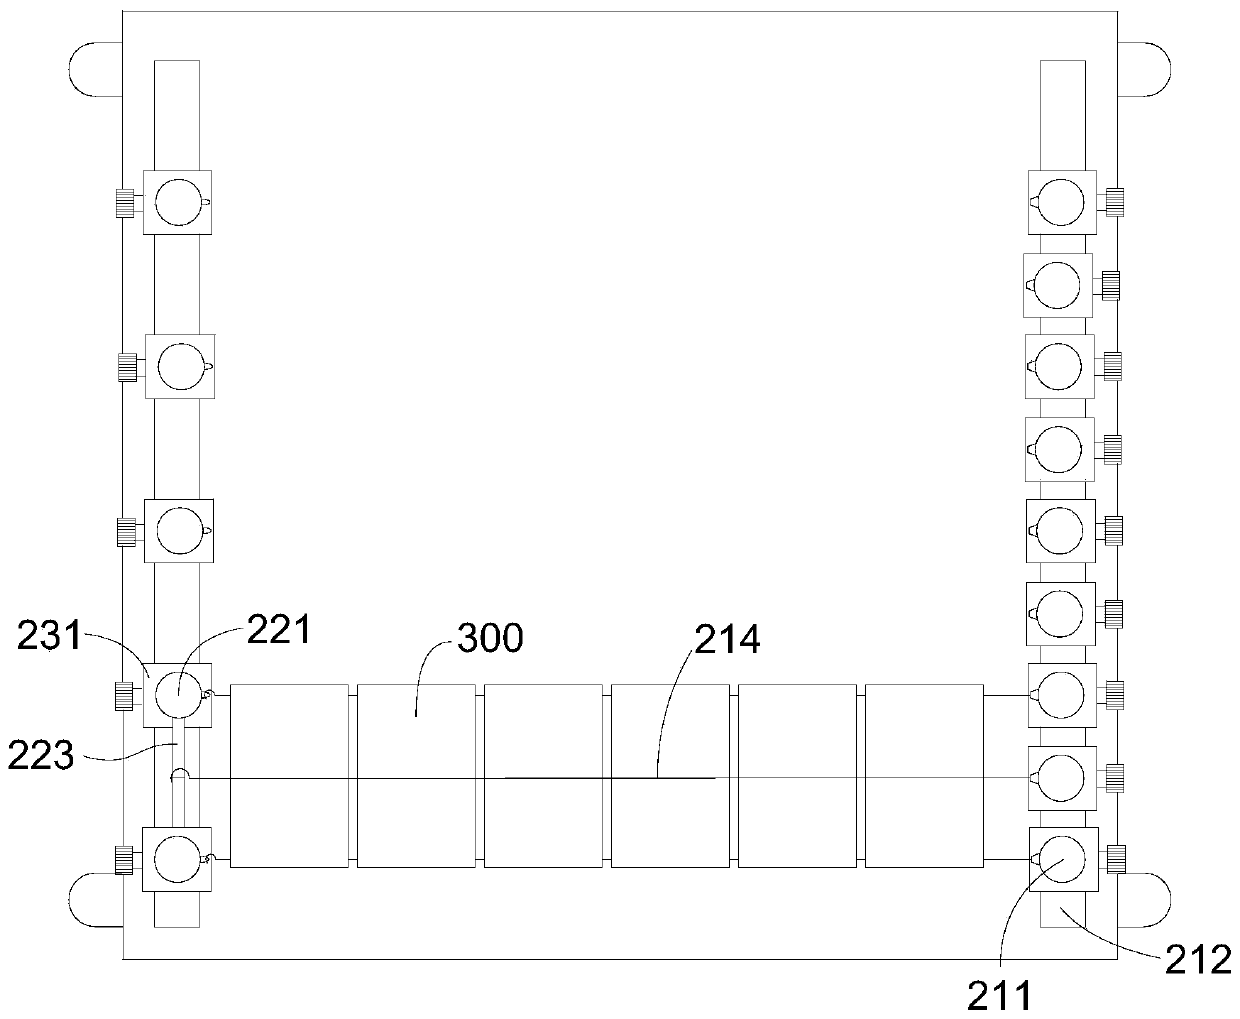 Printed circuit board cleaning method, printed circuit board and circuit board clamp